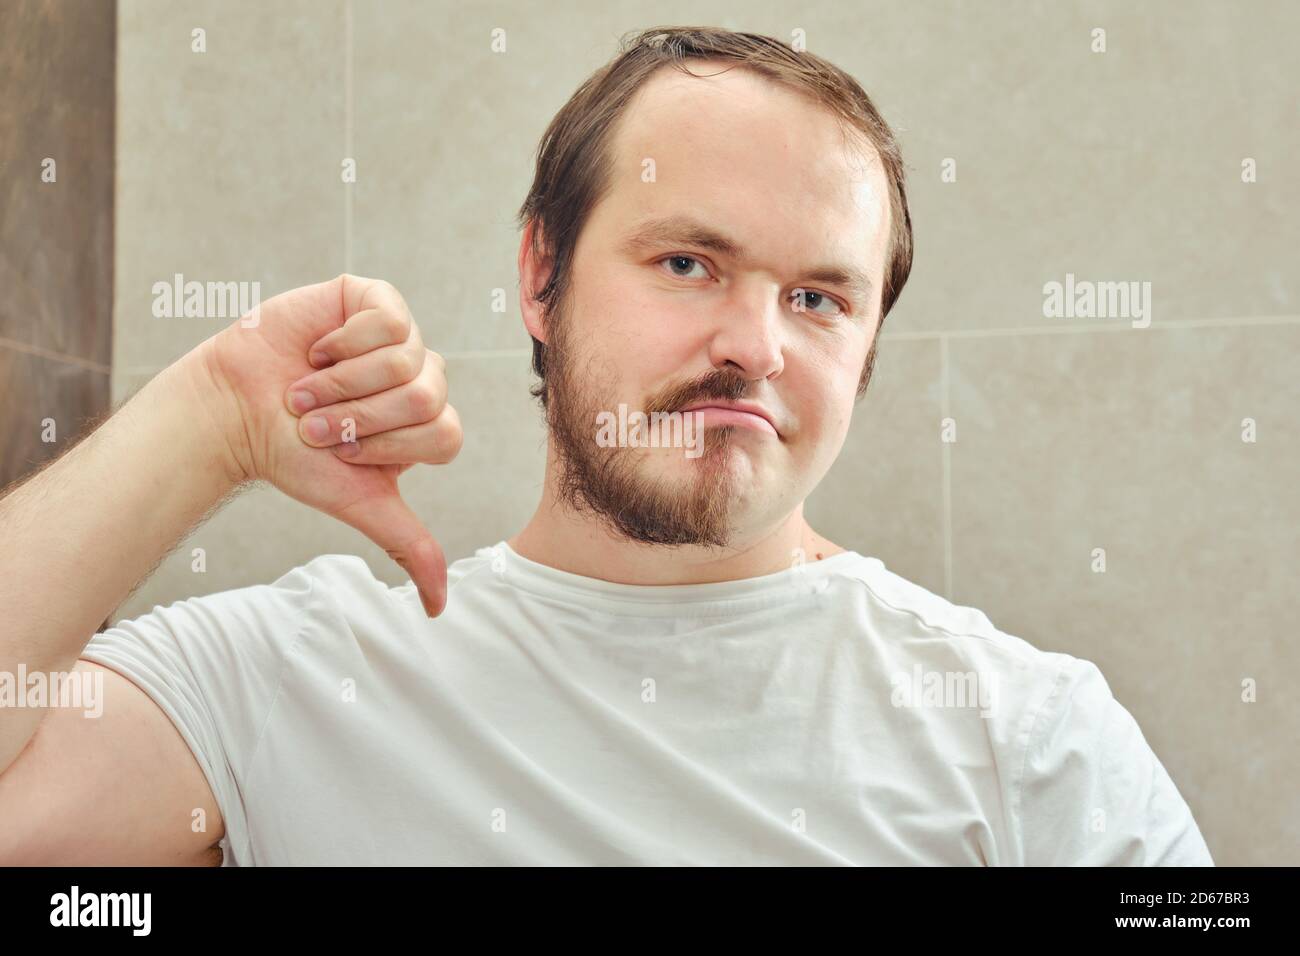 Un hombre adulto con media barba apunta tristemente un dedo hacia abajo. El  concepto de arreglo personal y problemas con la apariencia cuando se aísla  del coronavirus epid Fotografía de stock -